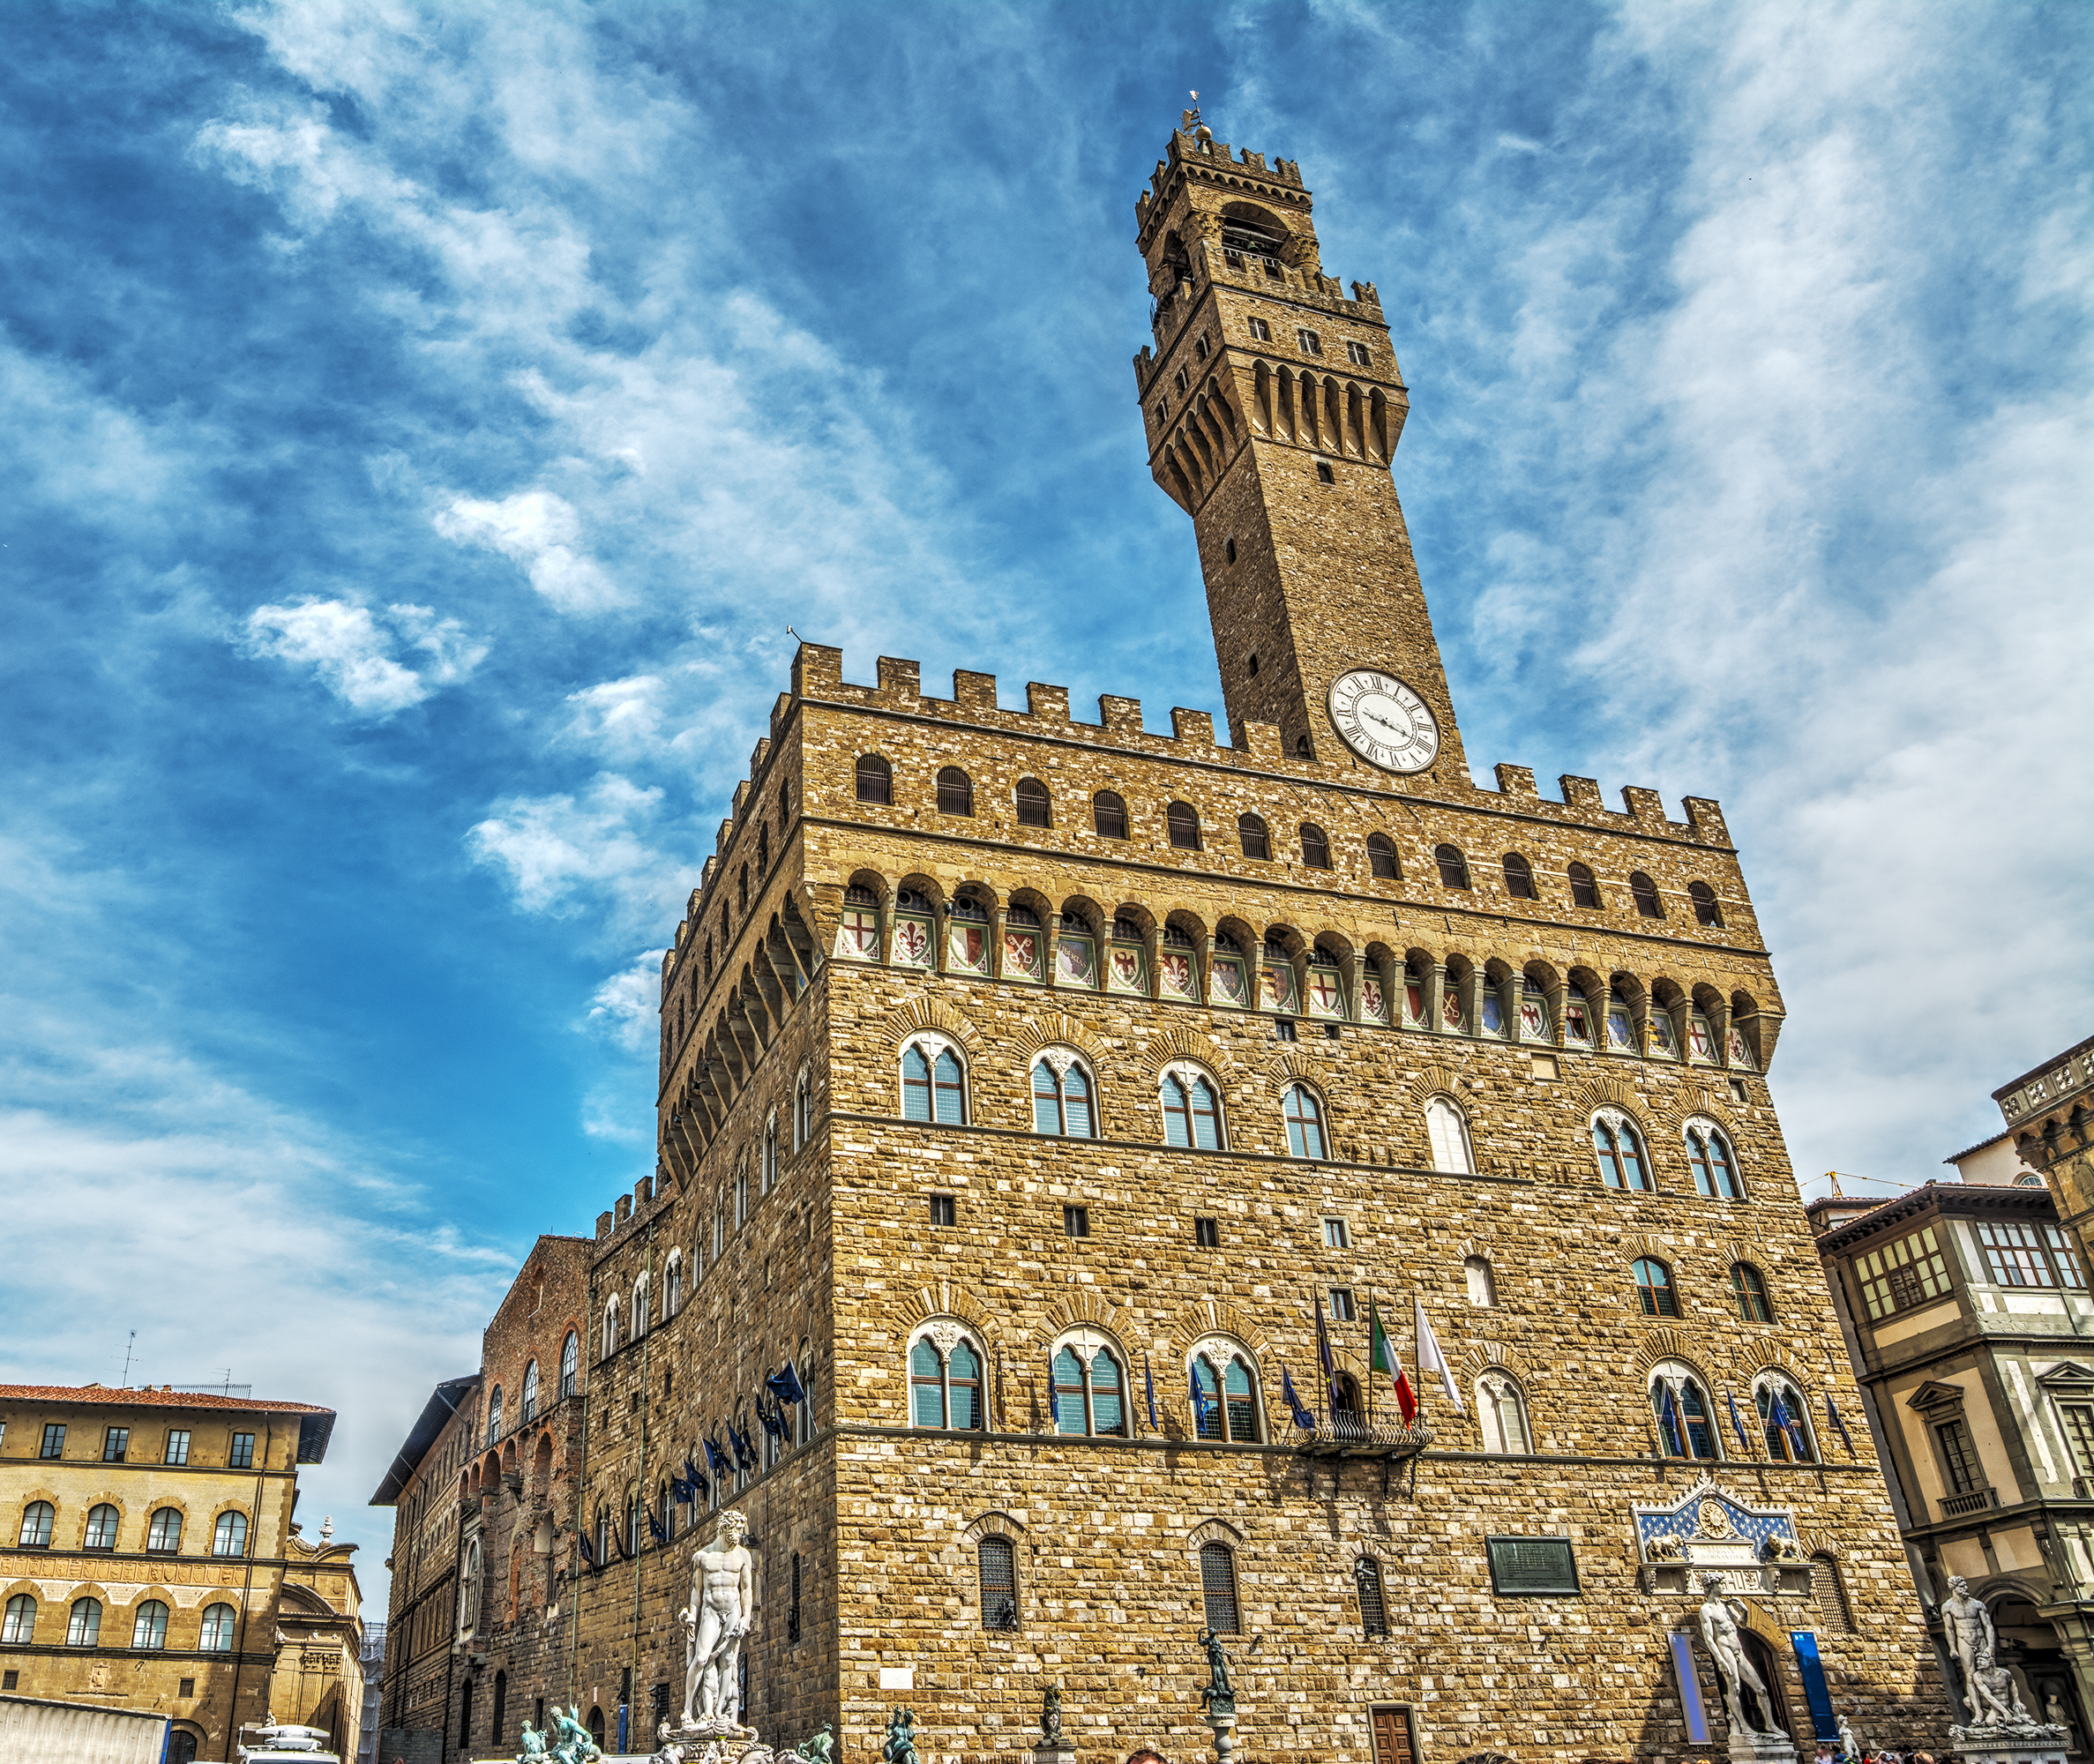 Palazzo Vecchio in Piazza della Signoria, Florence, italy